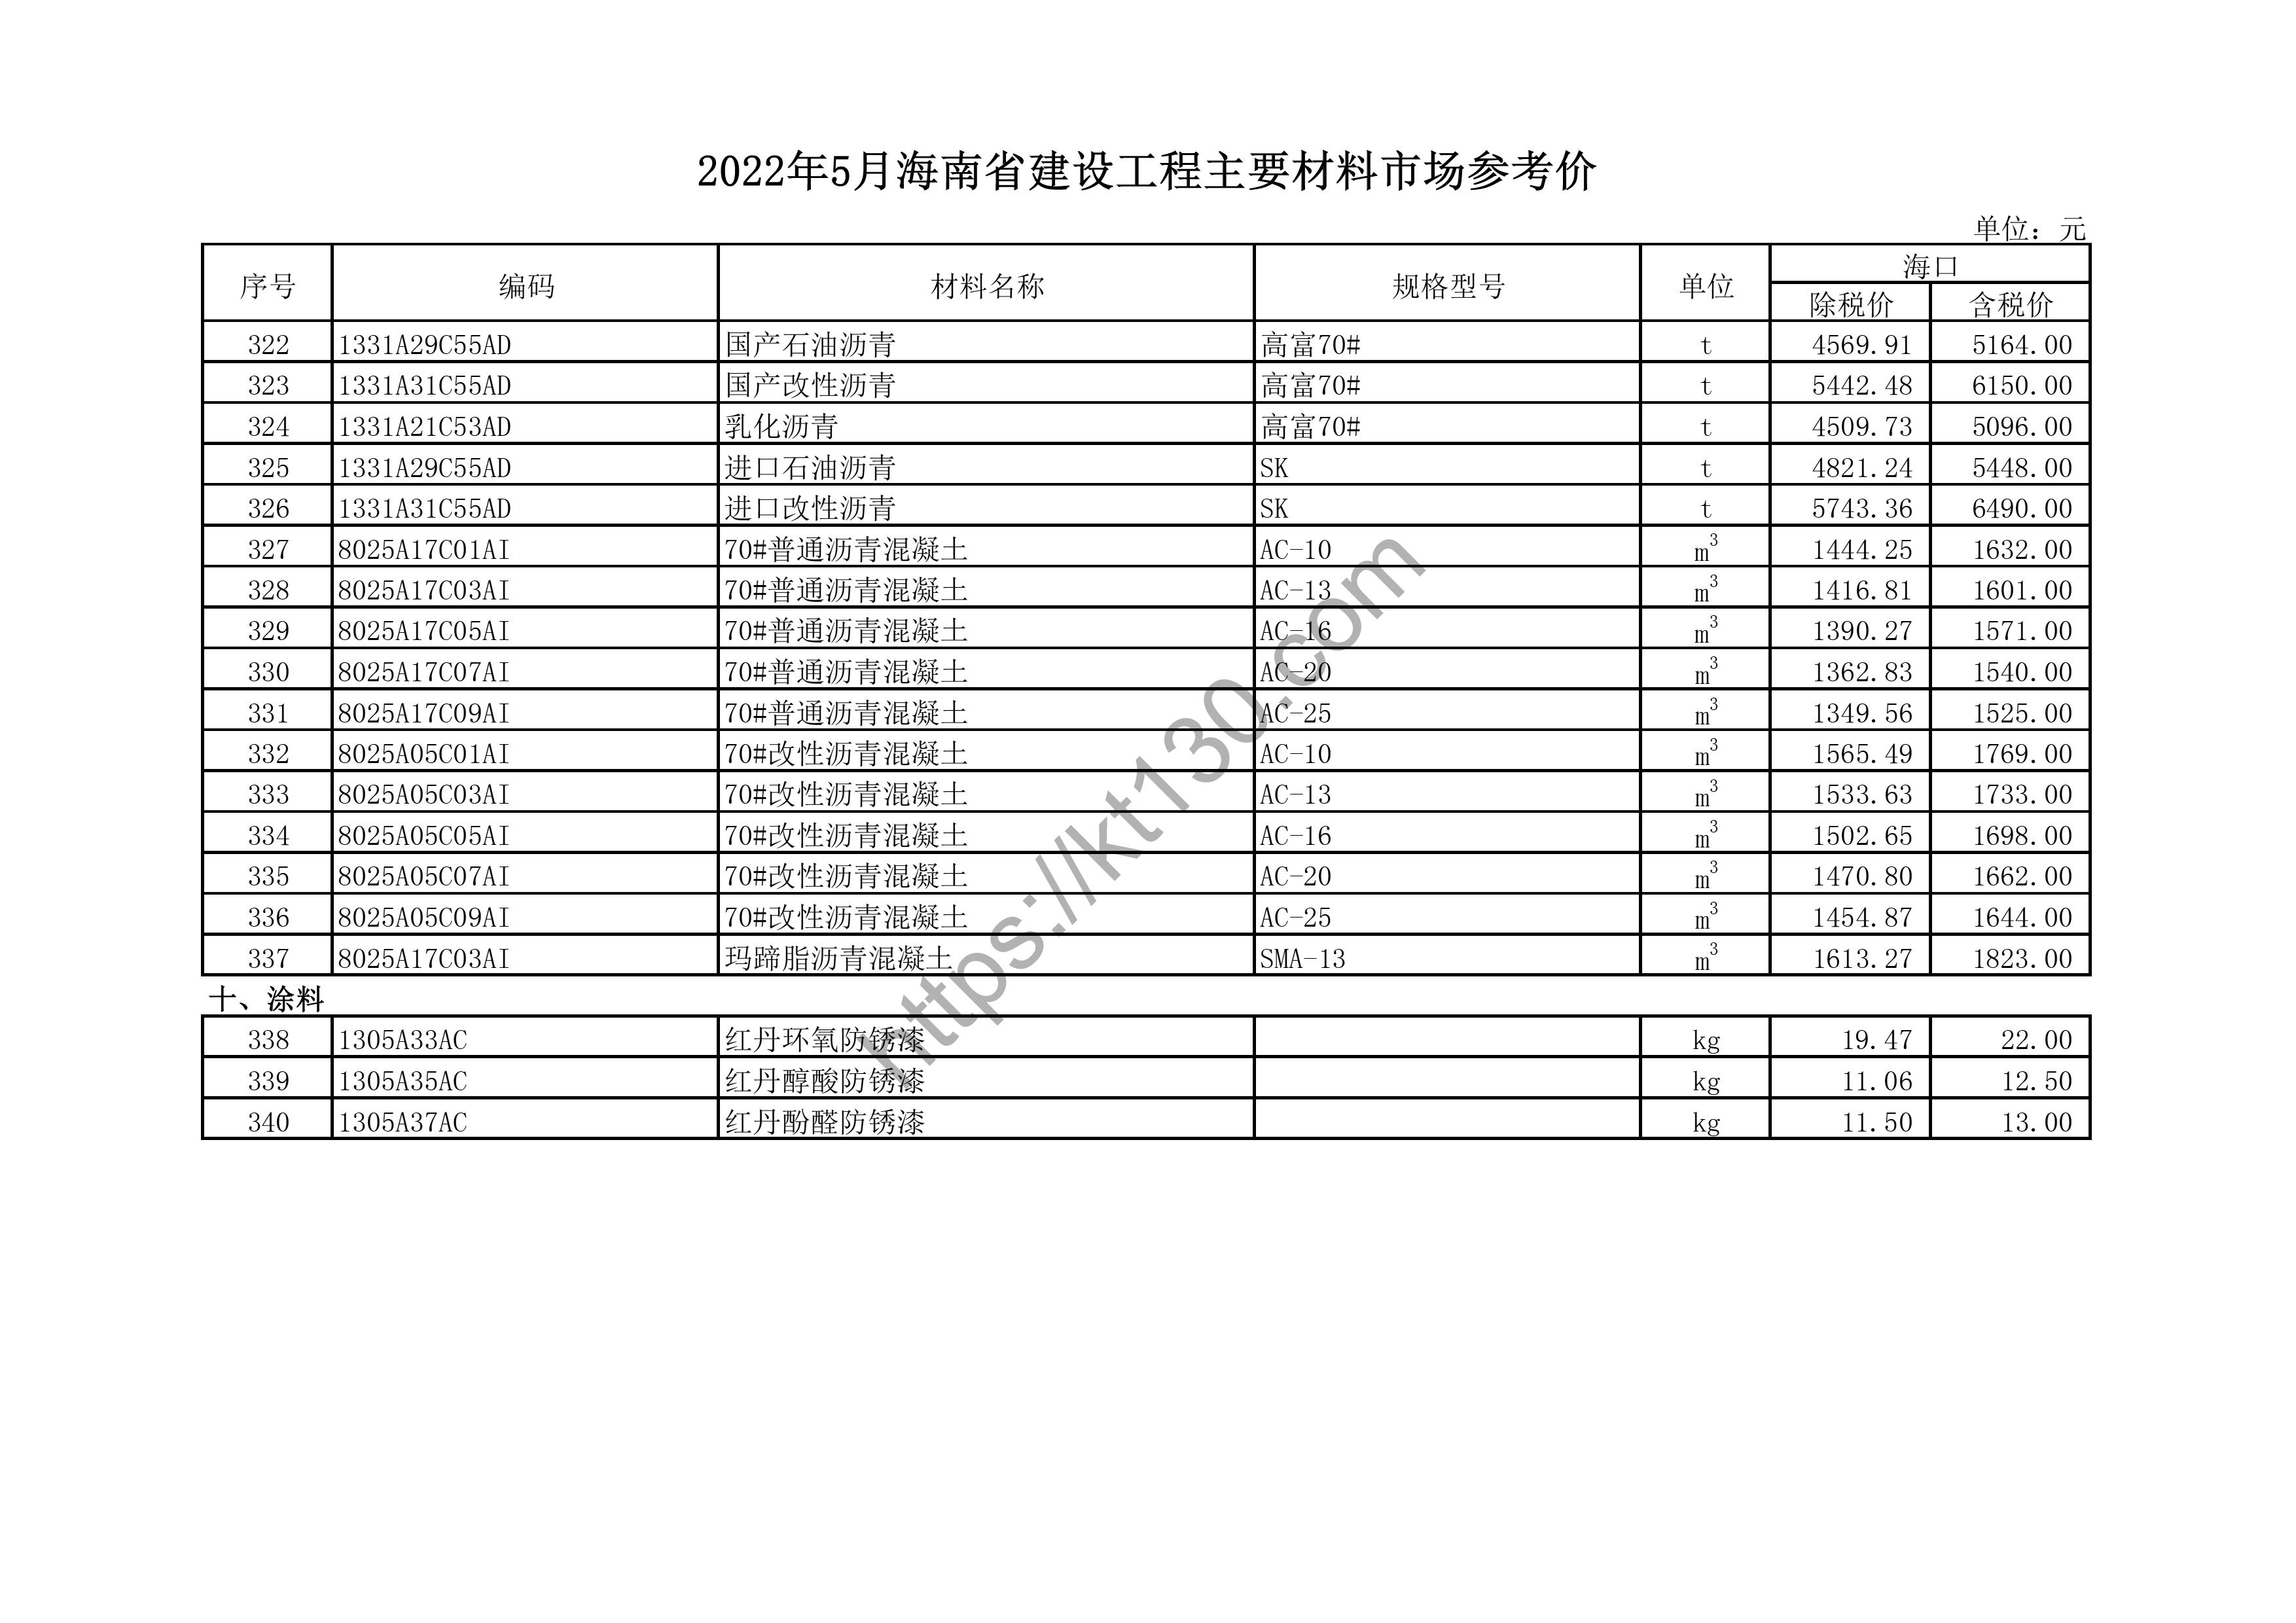 海南省2022年5月建筑材料价_汽柴油、自来水_44276